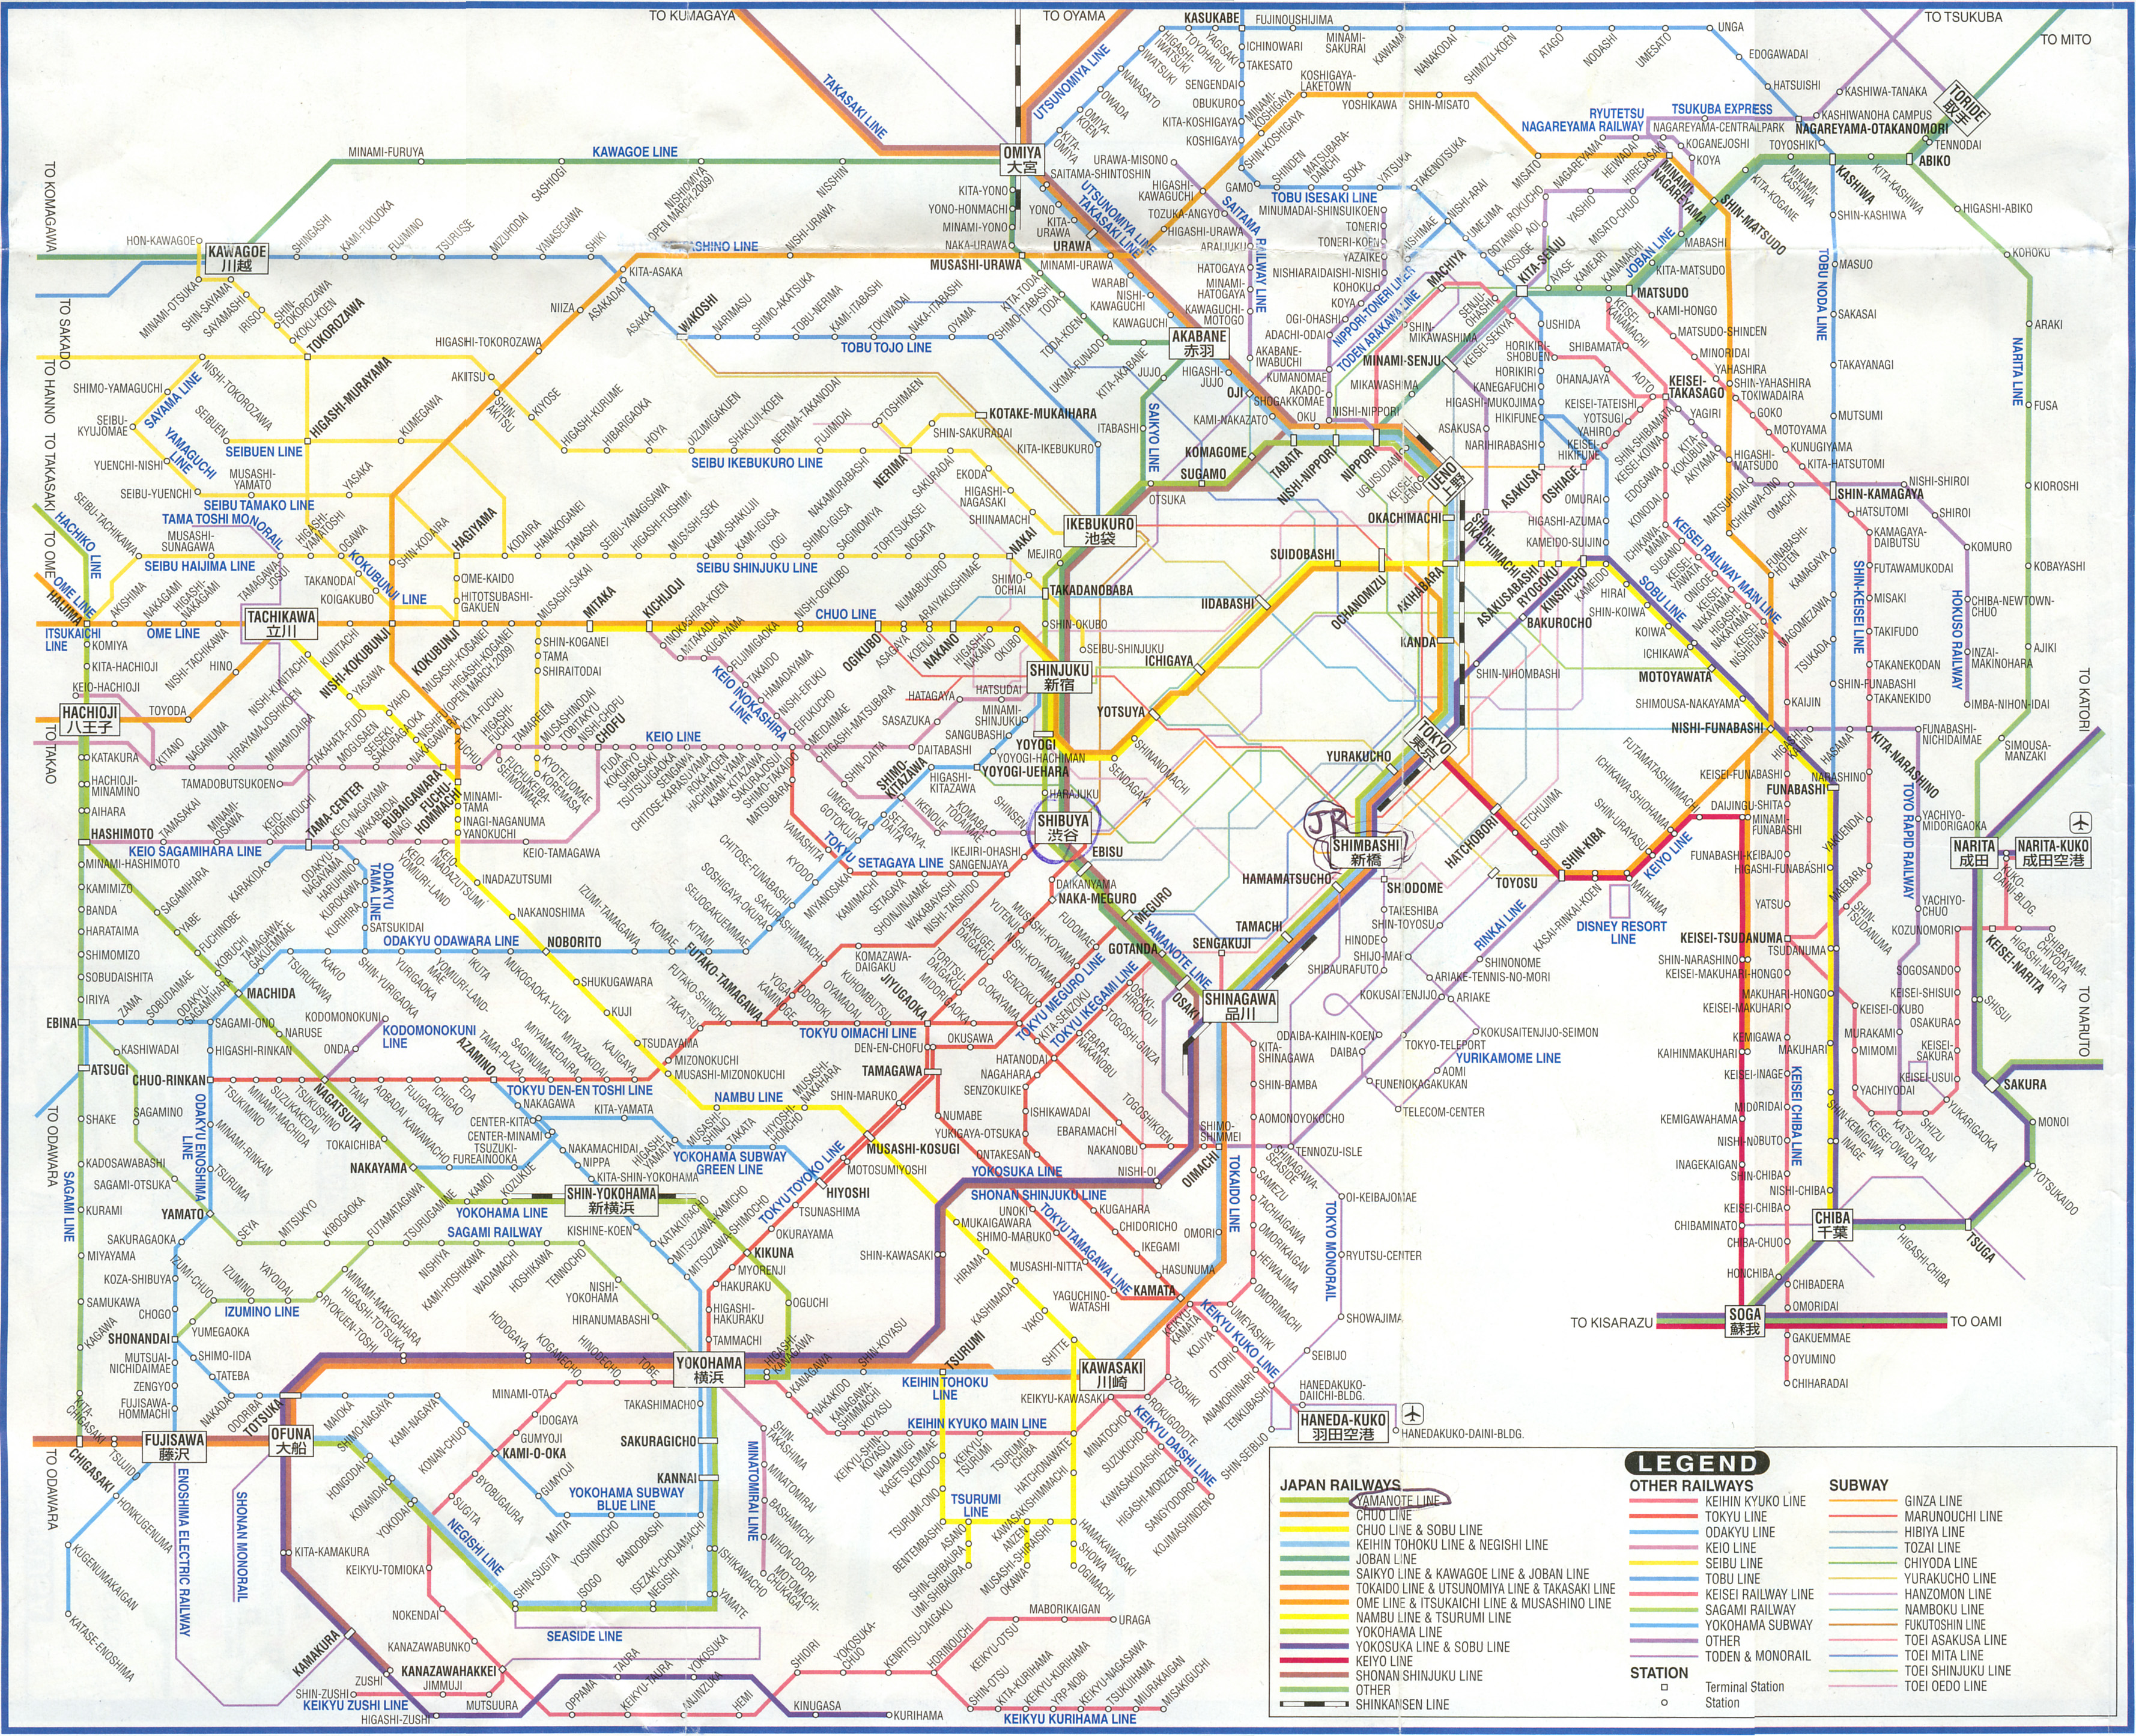 Карта линий метро города Токио (Tokyo subway map).